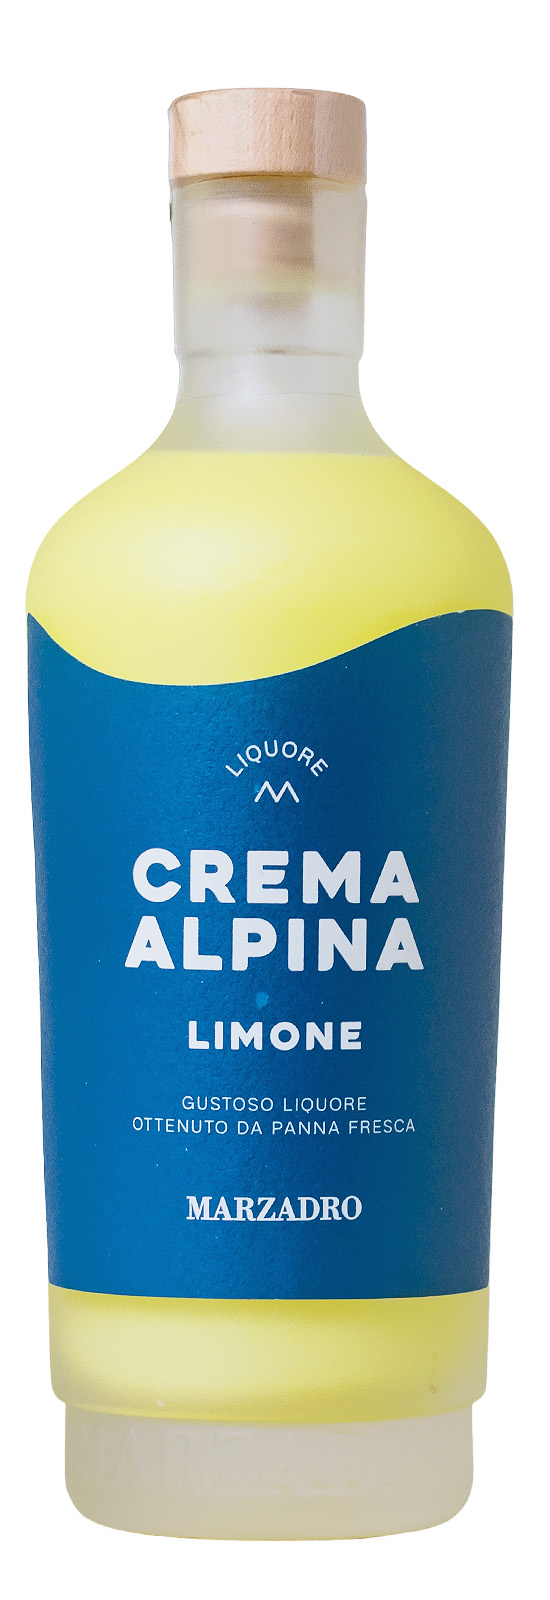 Marzadro Crema Alpina Limone - 0,7L 17% vol